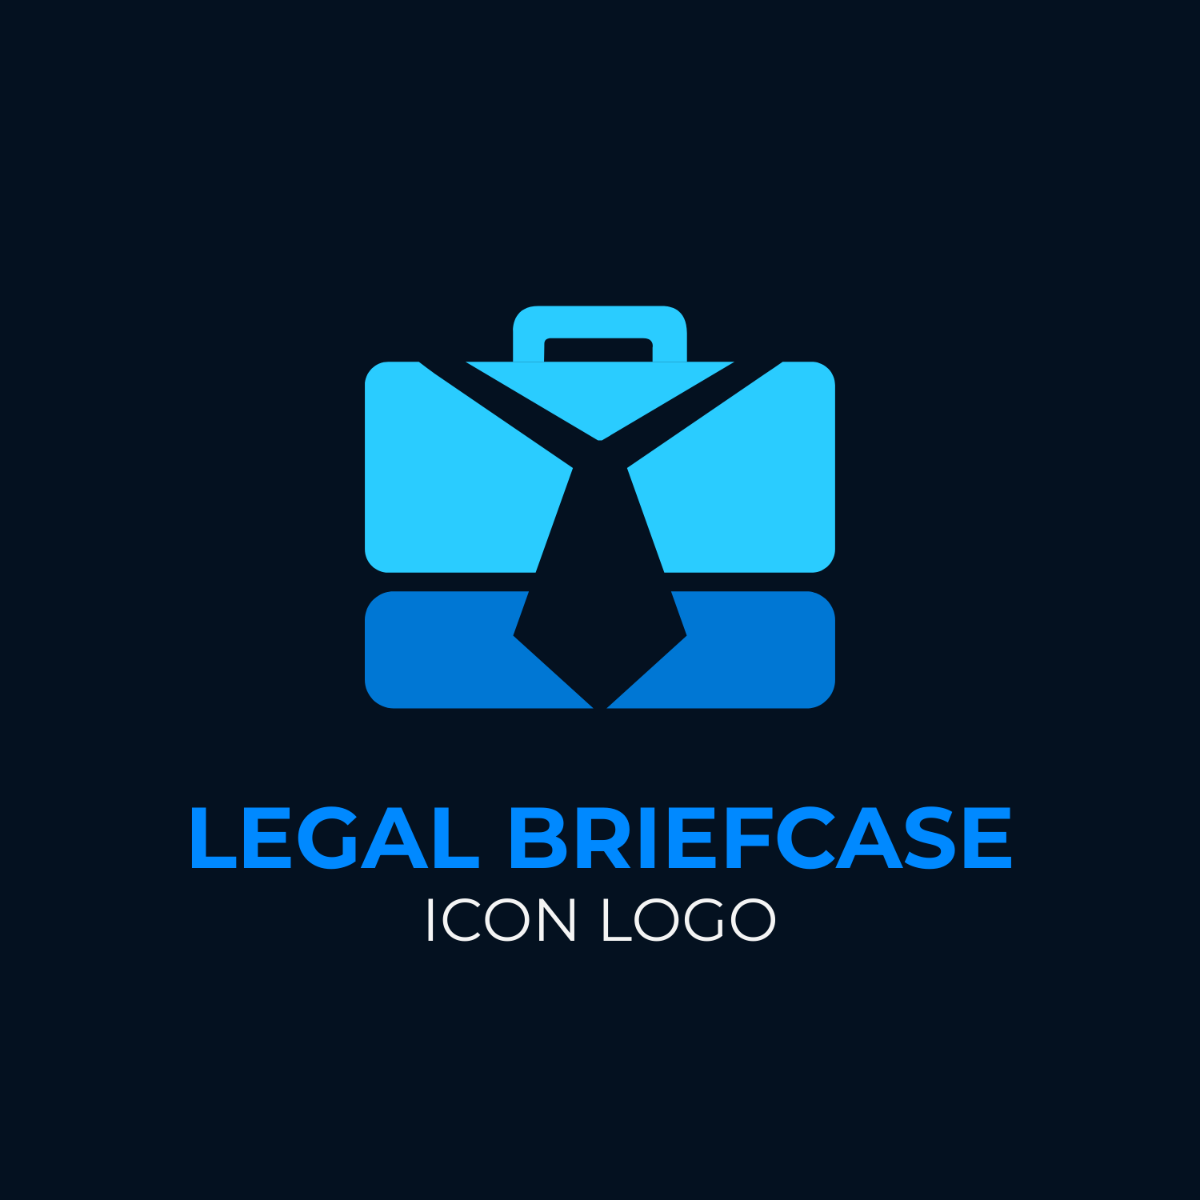 Legal Briefcase Icon Logo Template